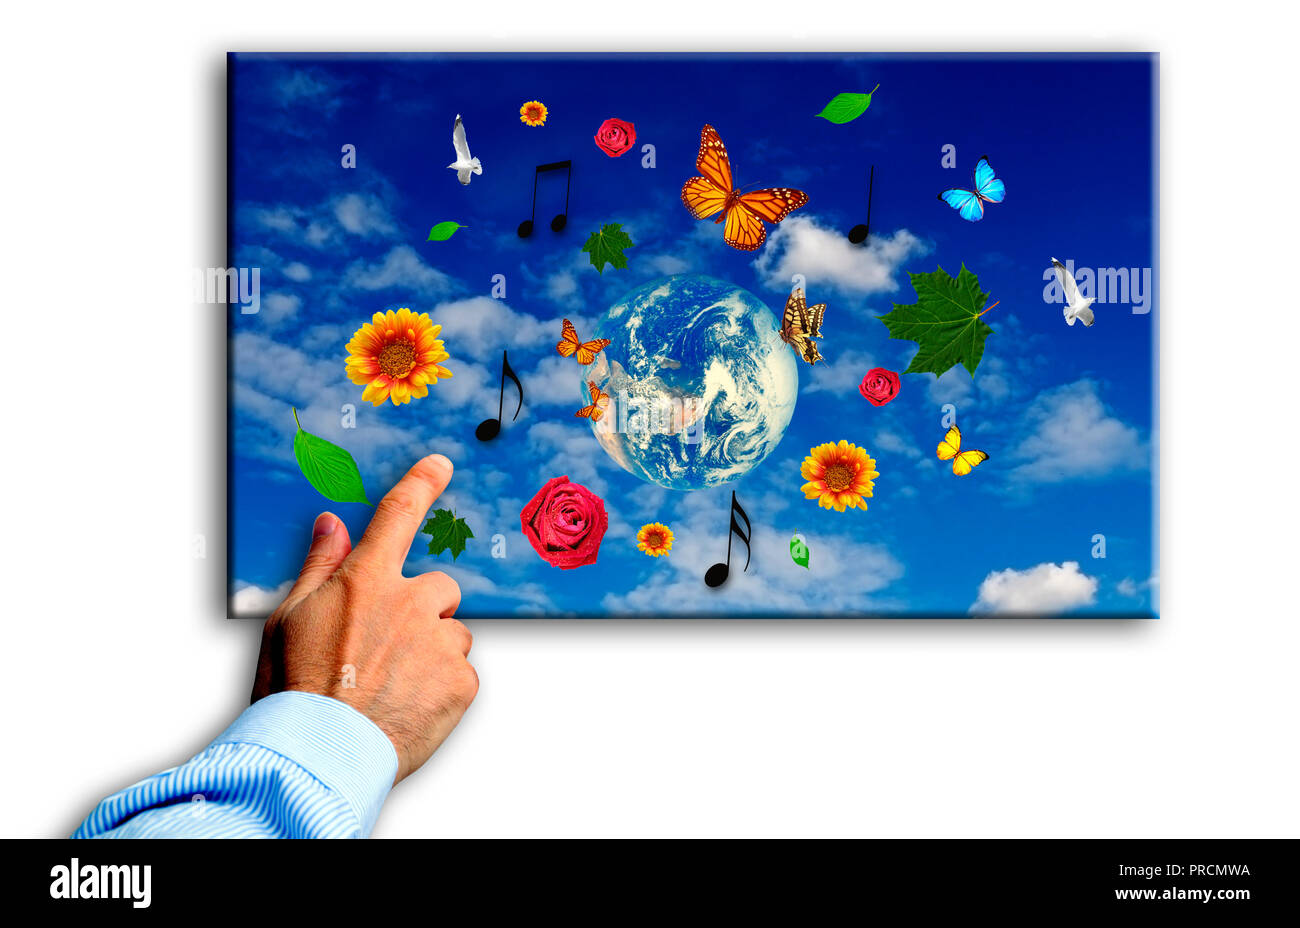 Hand Berühren eines Bildschirms mit verschiedenen Blumen, Schmetterlinge und Vögel, Konzept für die Auswahl der schönen Erde - Planet und hoffnungsvolle Zukunft Stockfoto